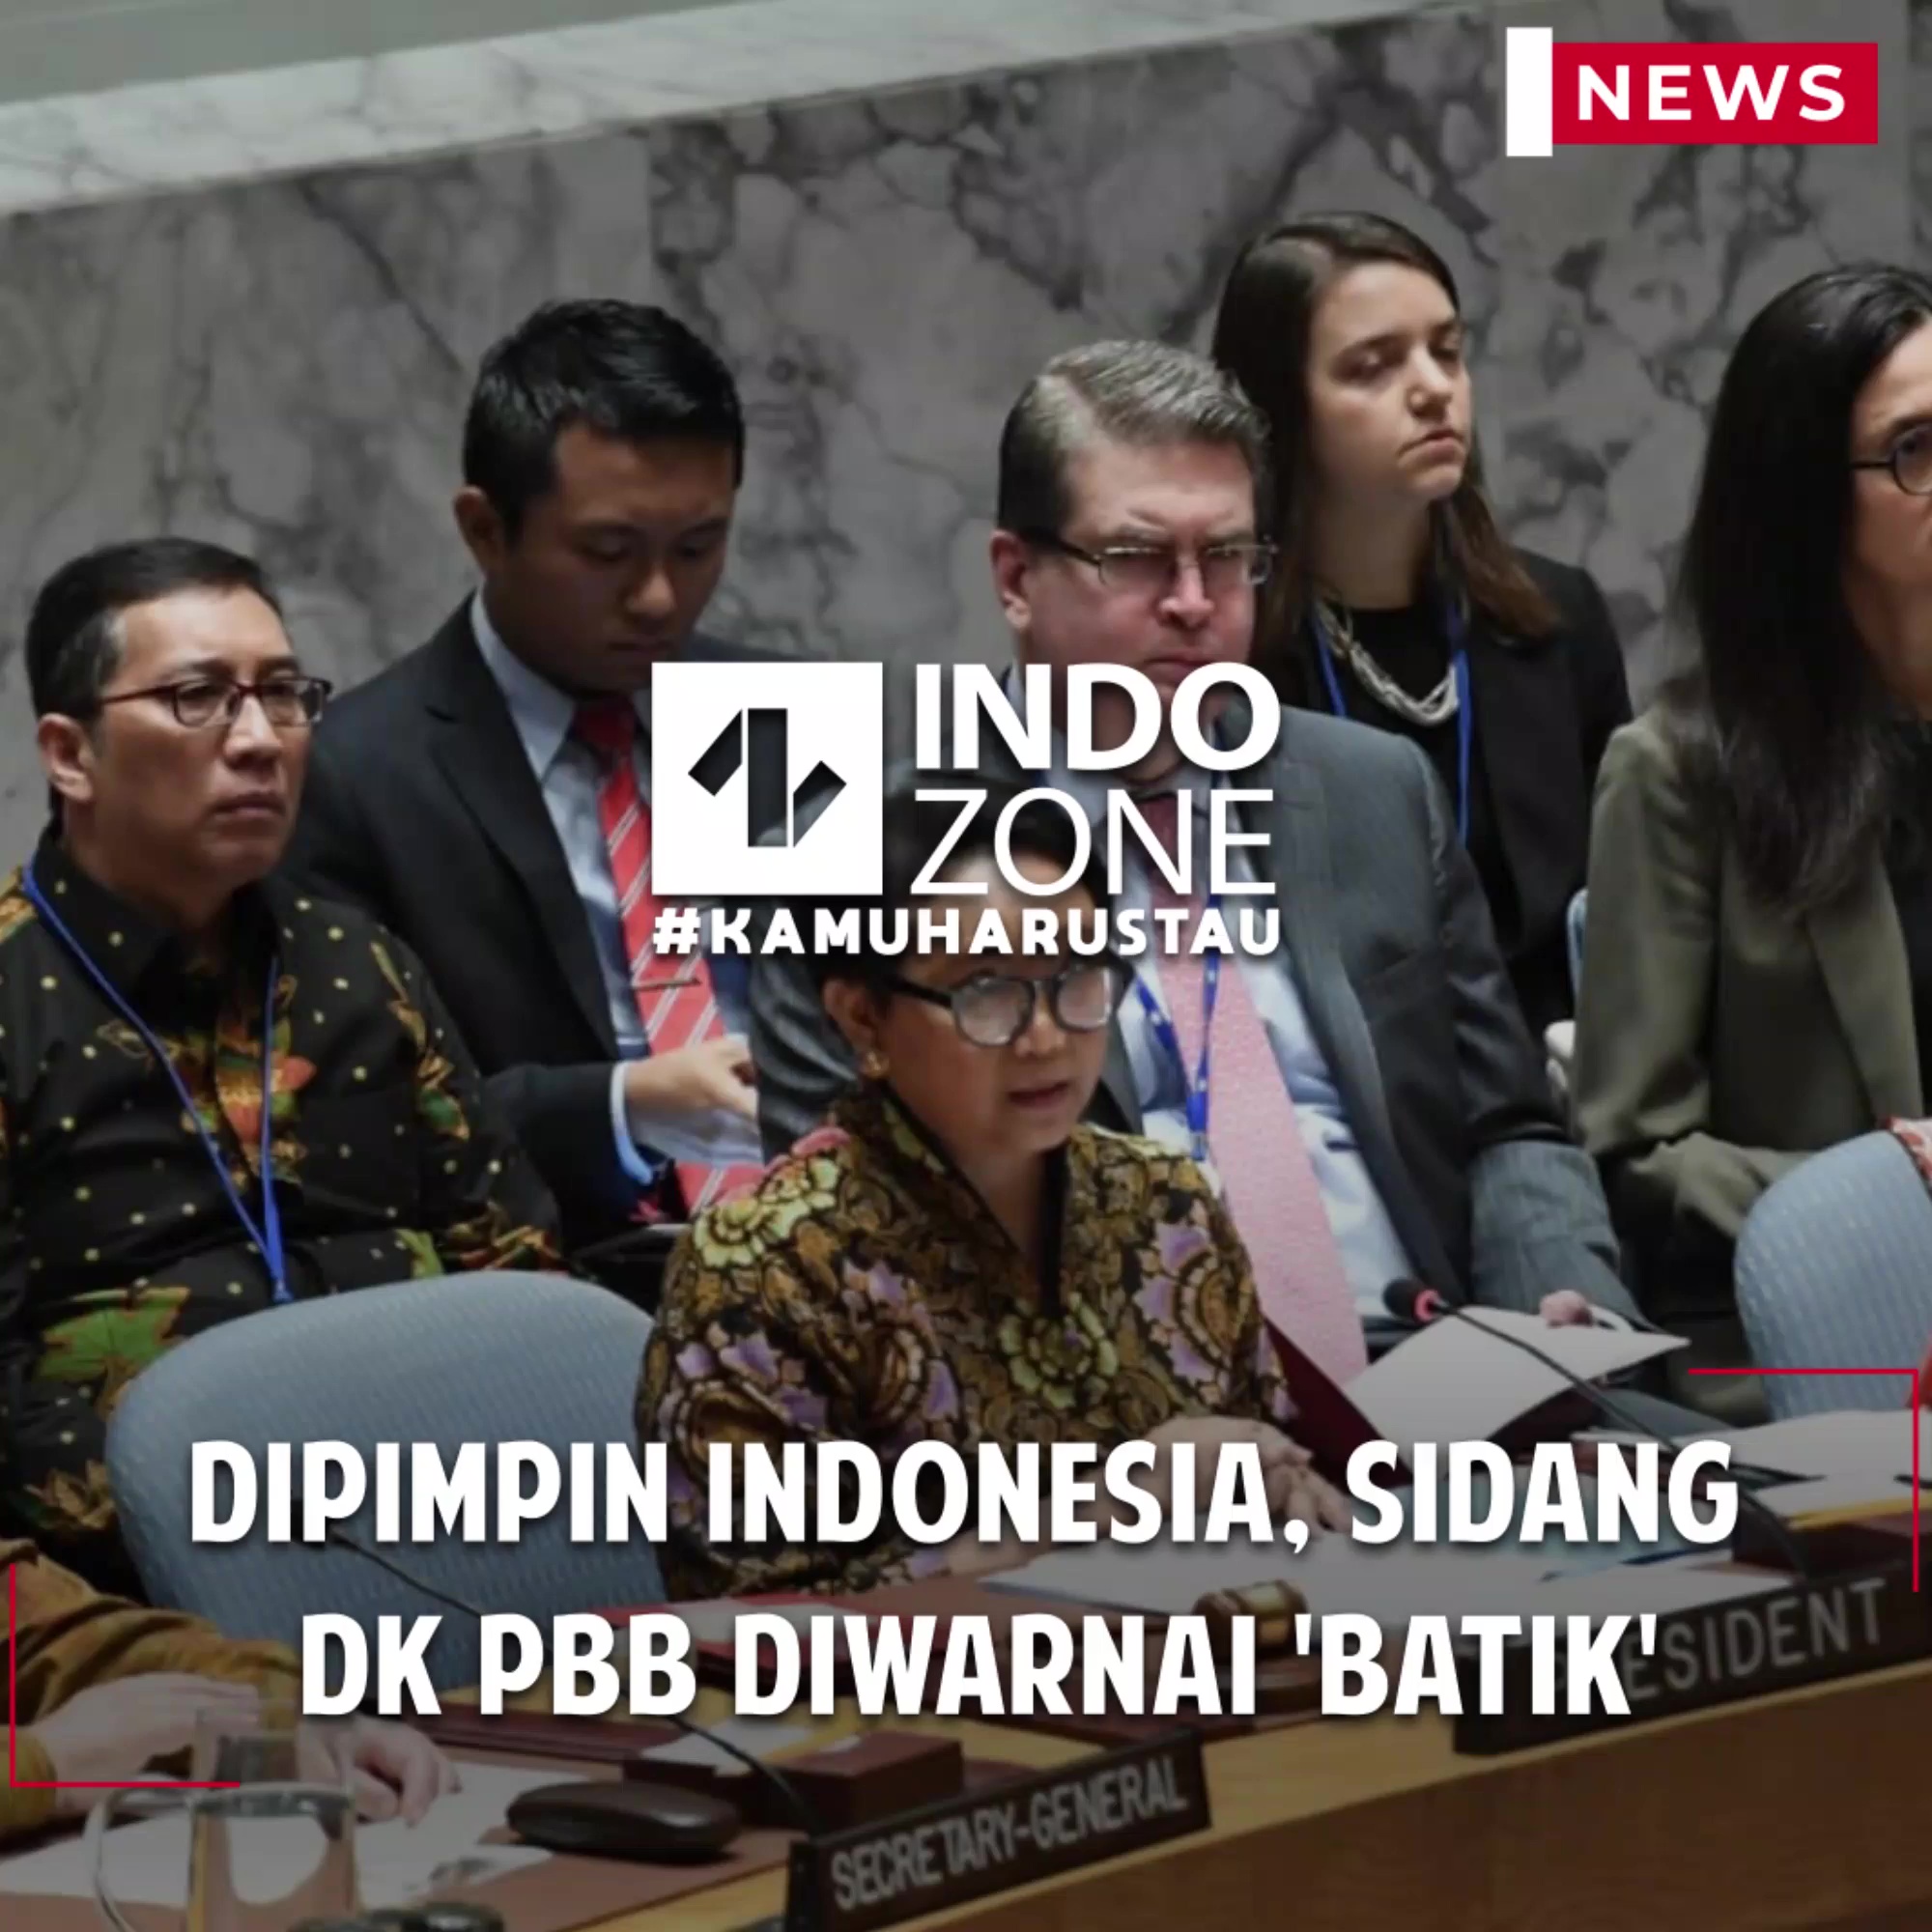 Dipimpin Indonesia, Sidang DK PBB diwarnai 'Batik'